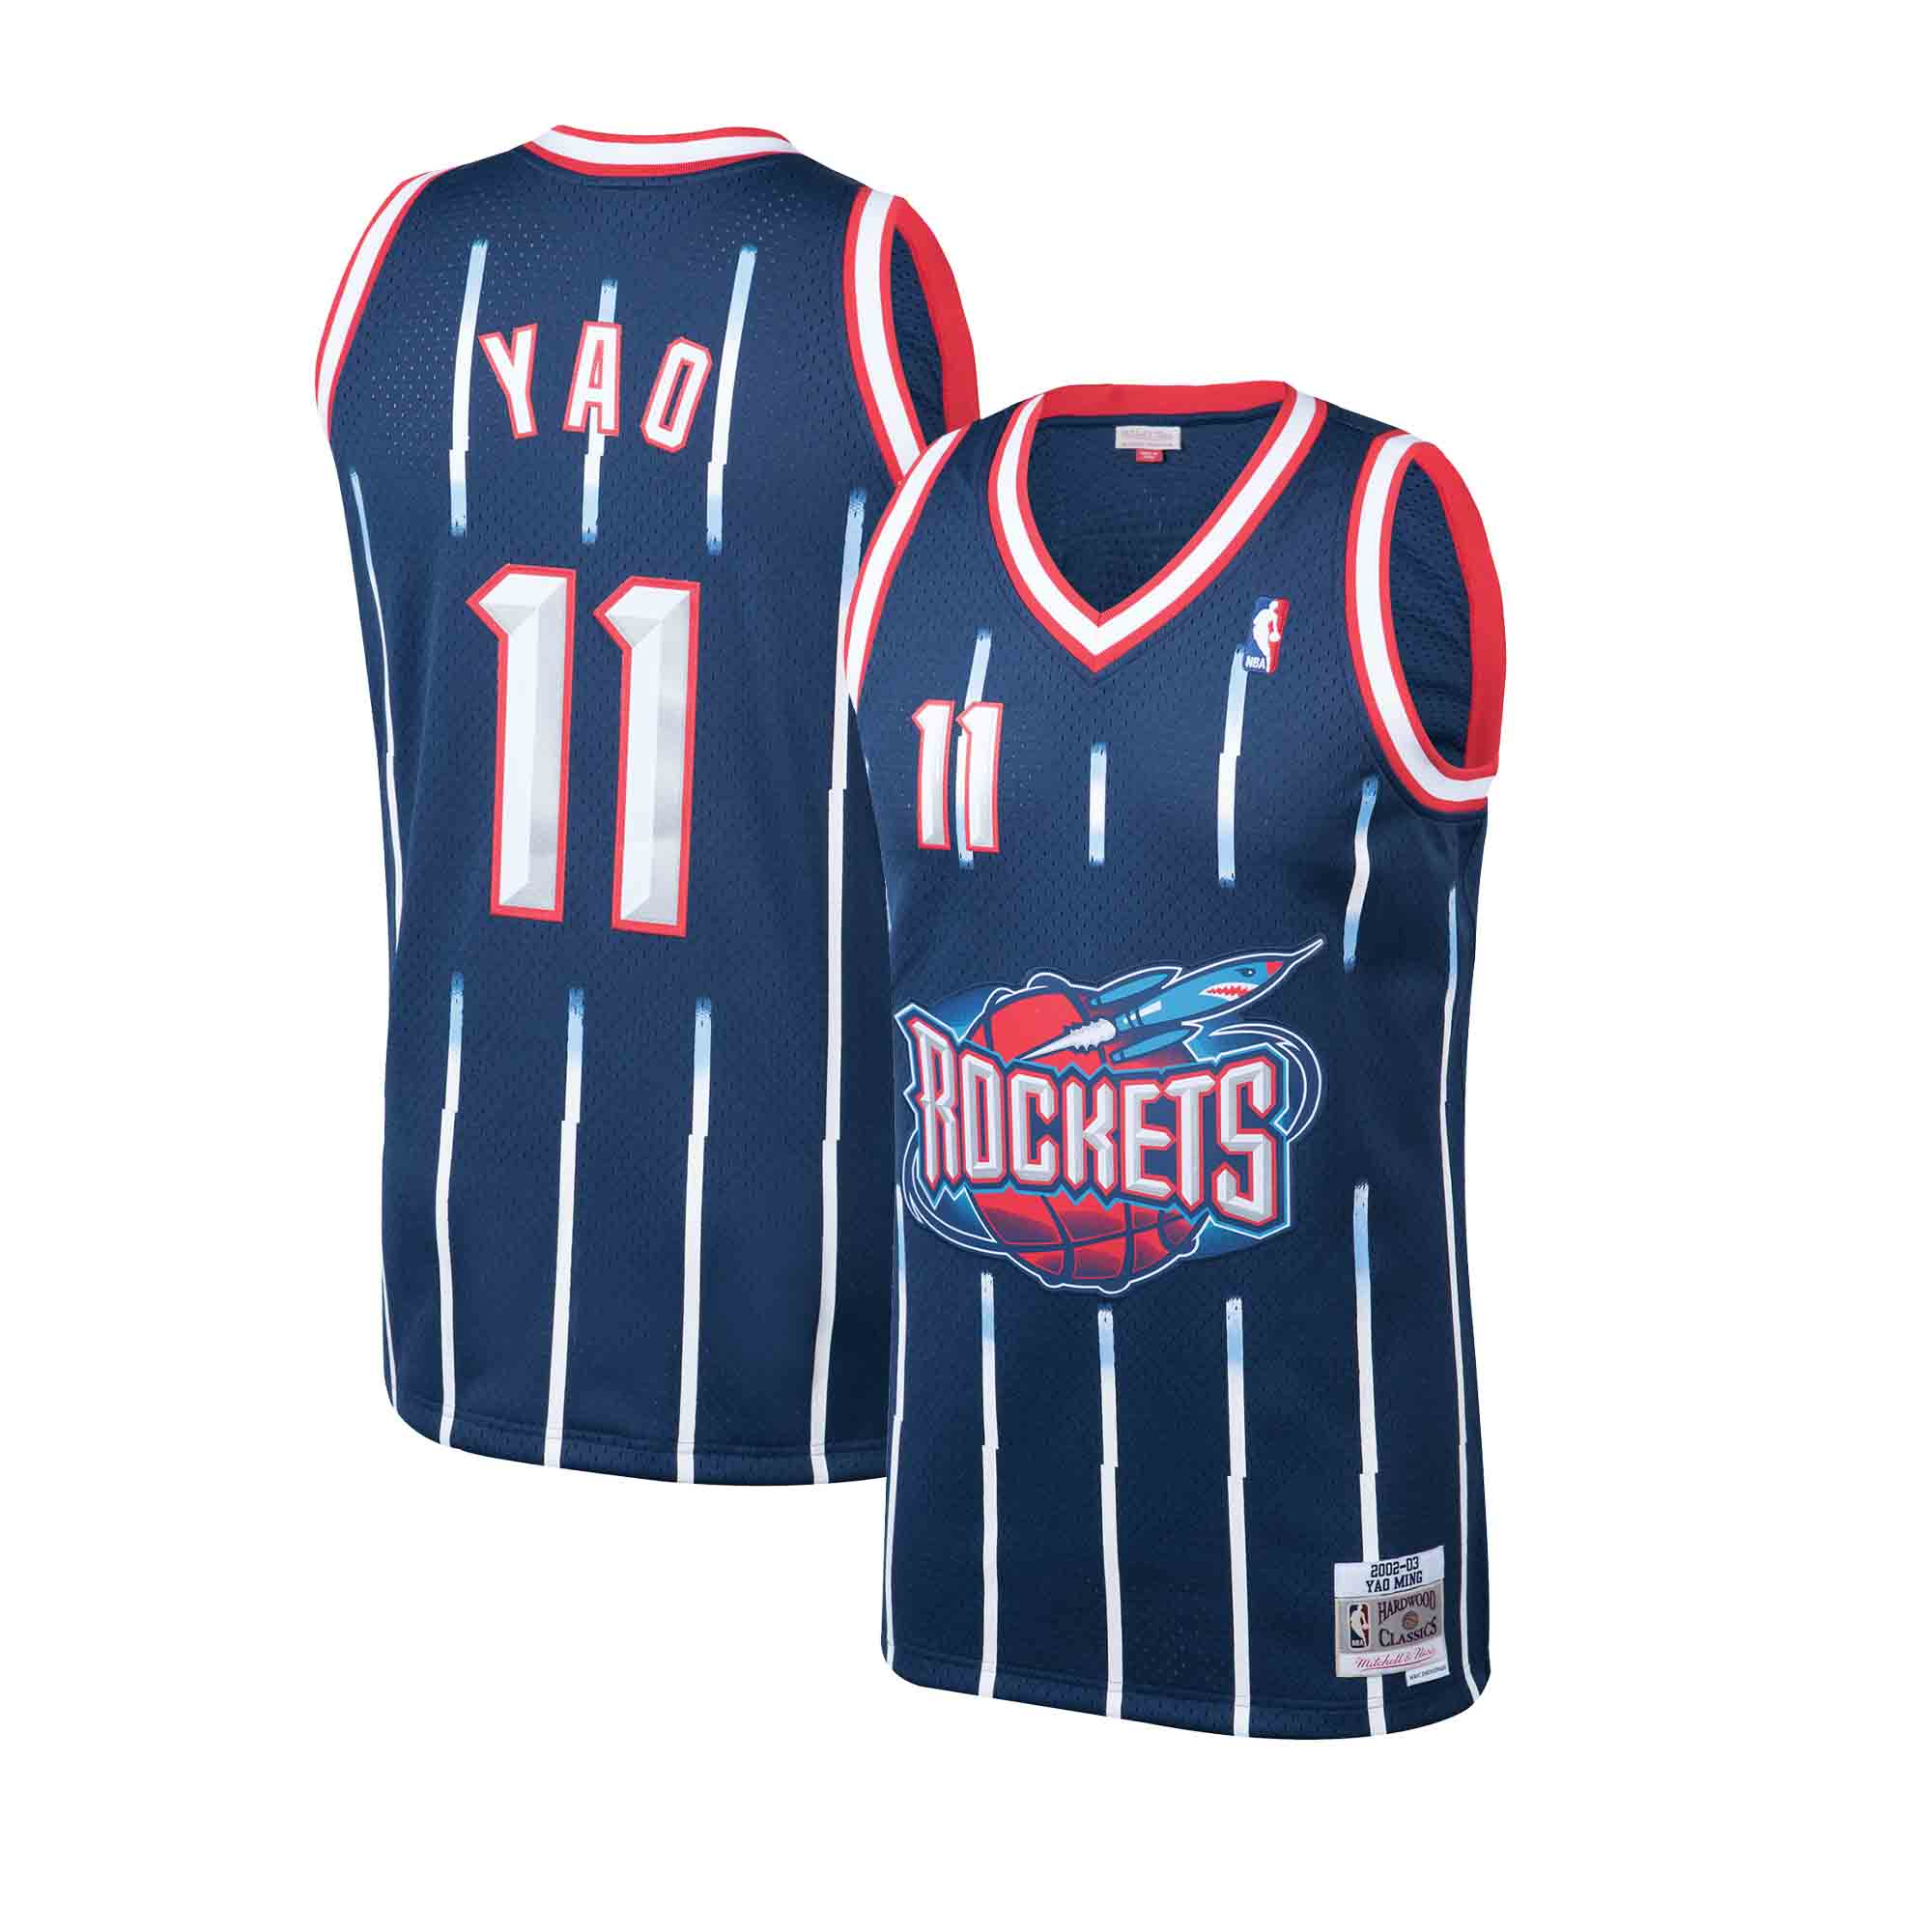 Nike Yao Ming #11 Houston Rockets NBA Basketball Jersey Size 2XL